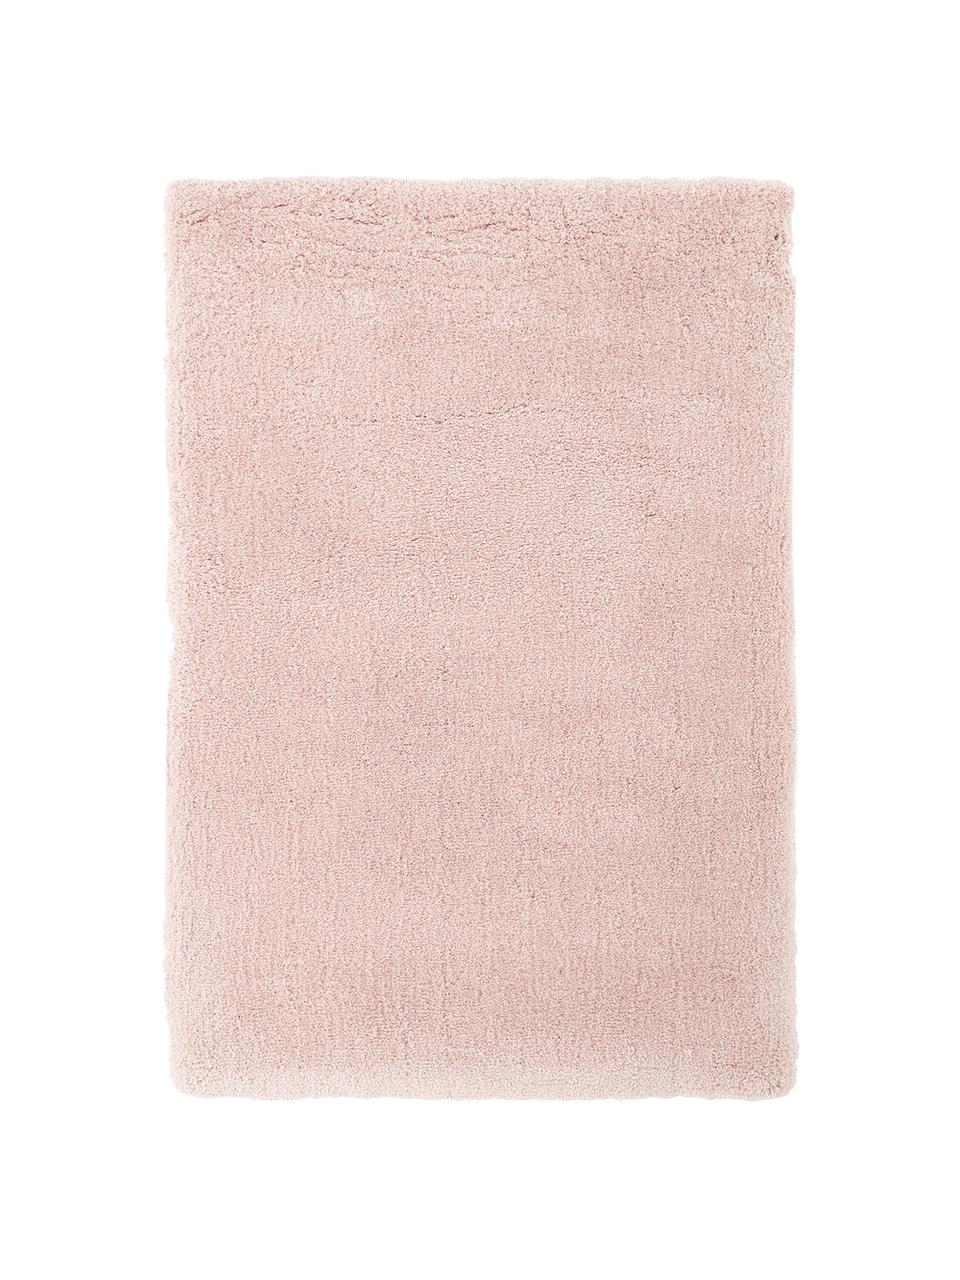 Tappeto morbido a pelo lungo rosa Leighton, Microfibra (100 % poliestere), Rosa, Larg. 200 x Lung. 300 cm (taglia L)